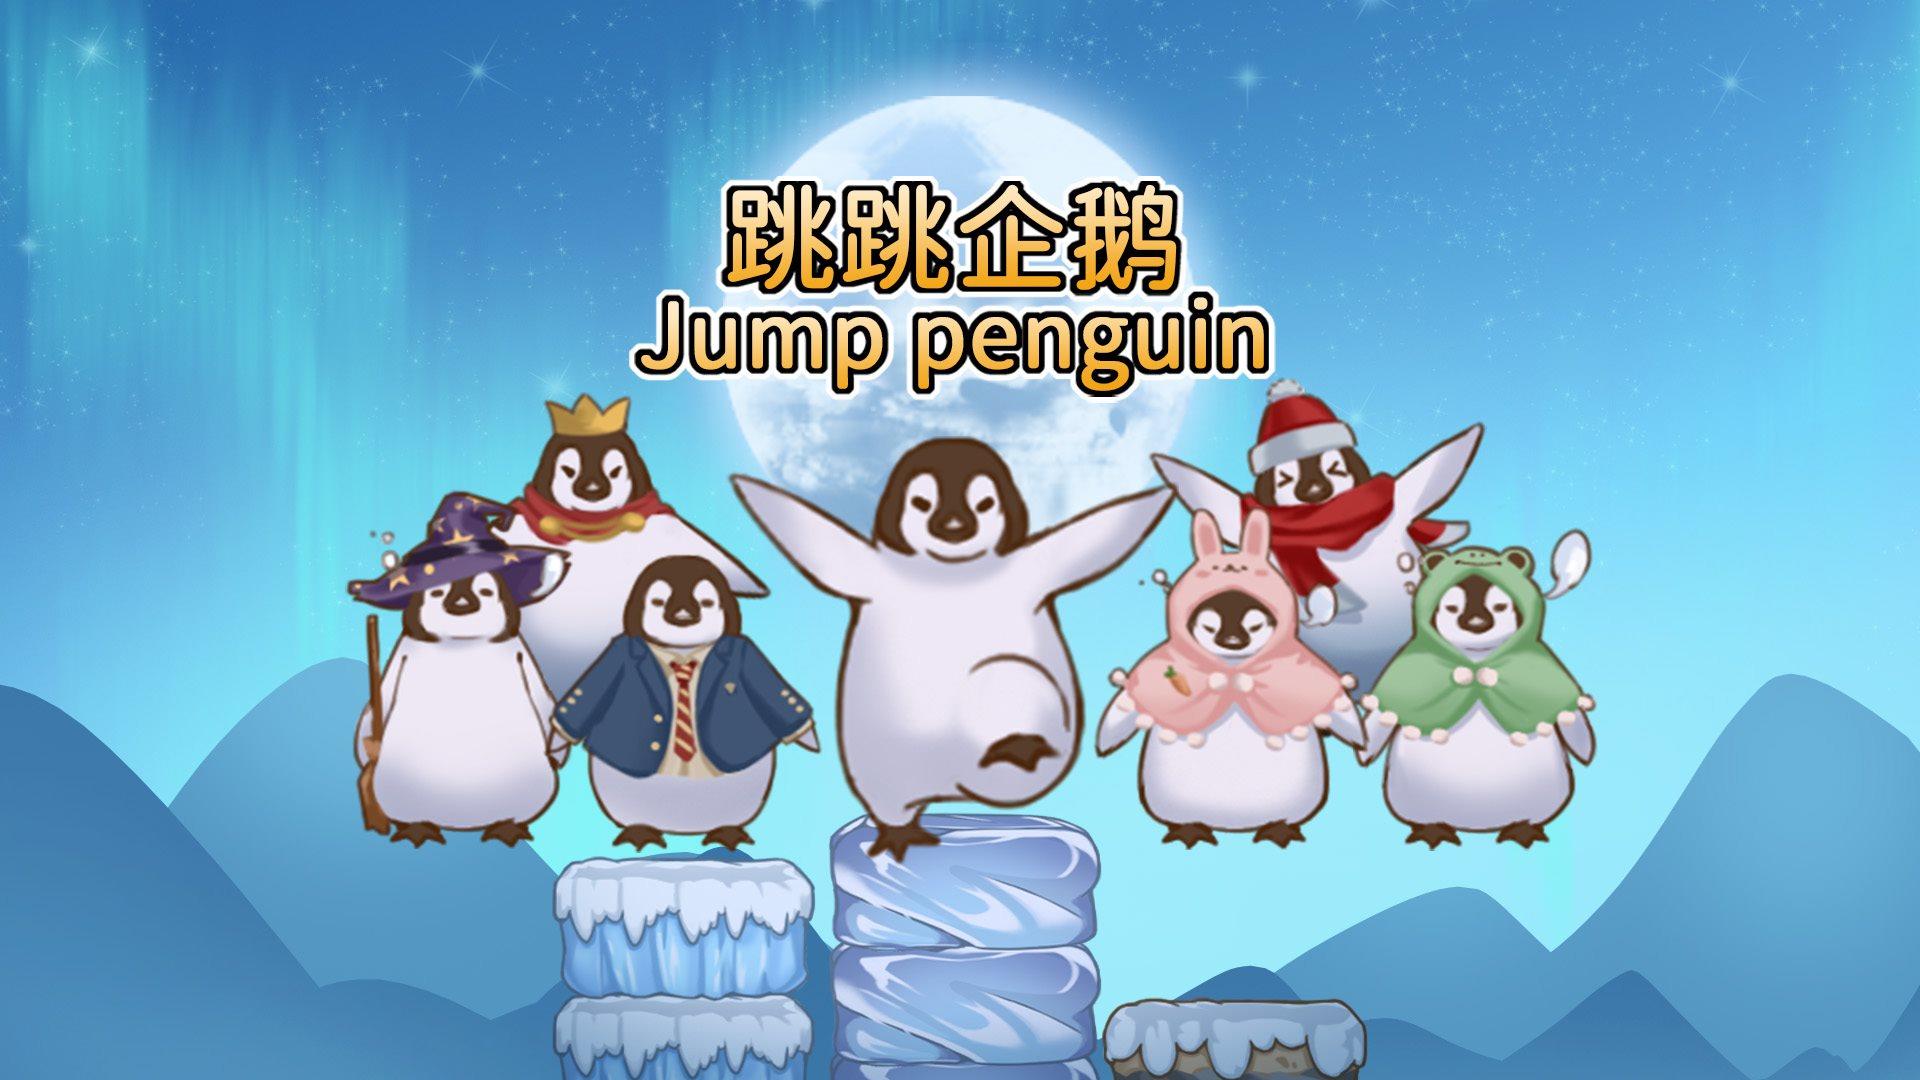 Banner of pinguin memantul 0.1.2021.0108.3